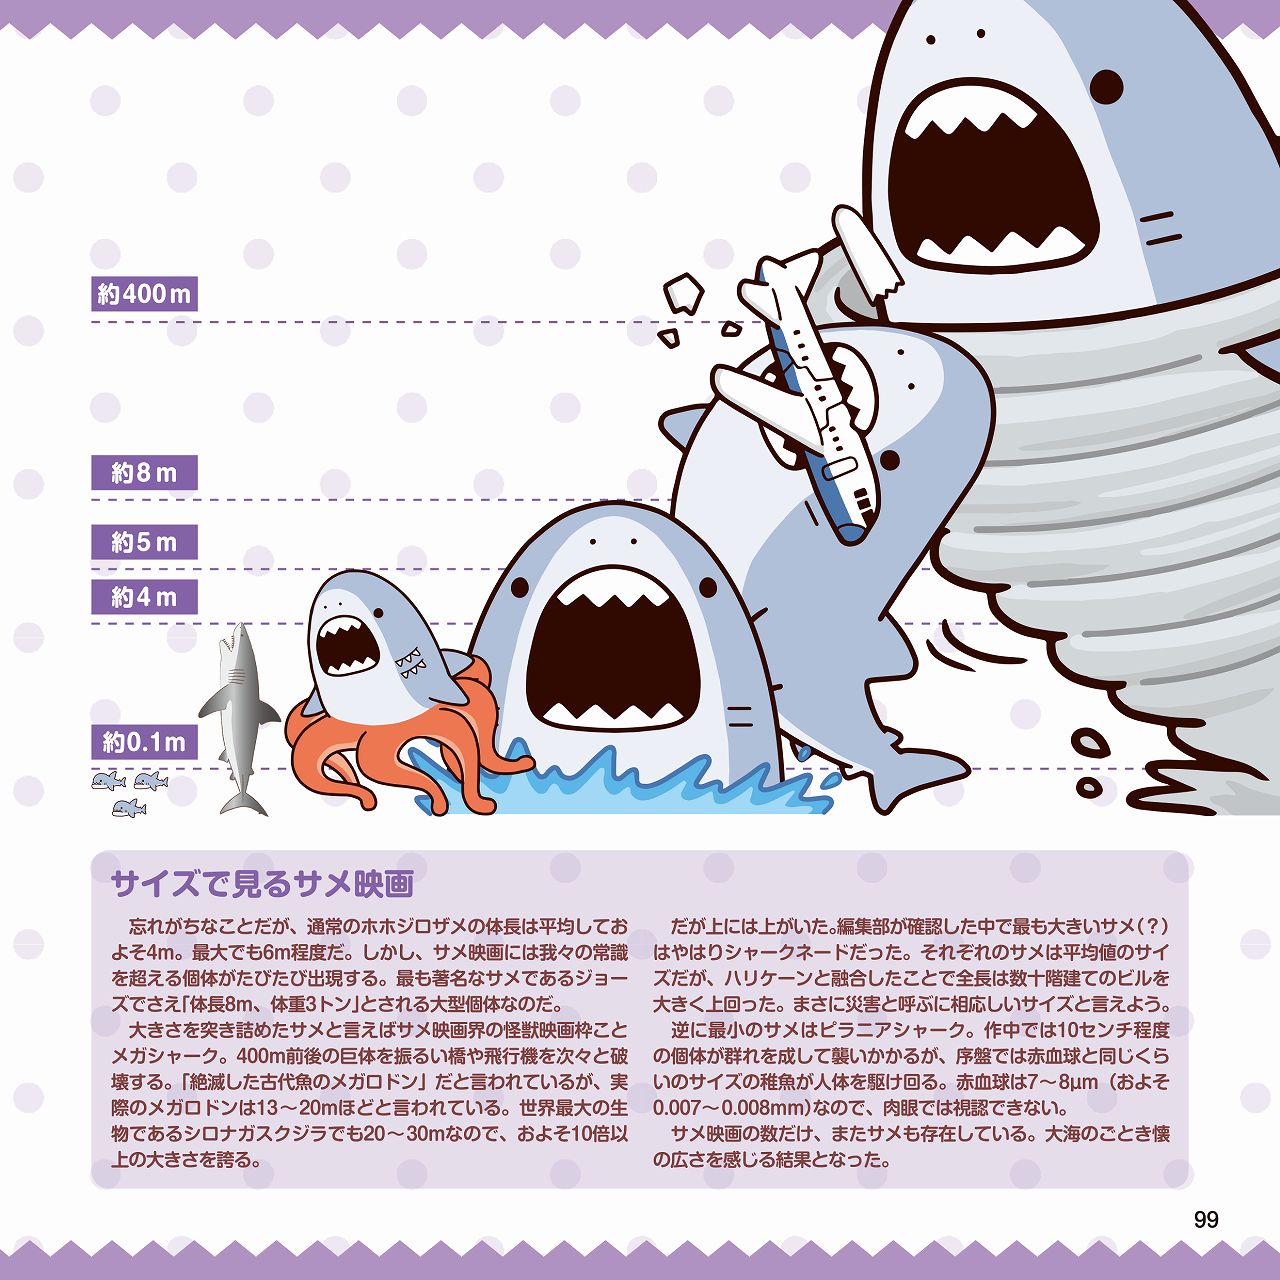 オバケもゾンビもなんでもあり かわいいイラストで見る ヘンテコ サメ映画の世界 かわいいサメ映画図鑑 リリース ホラー通信